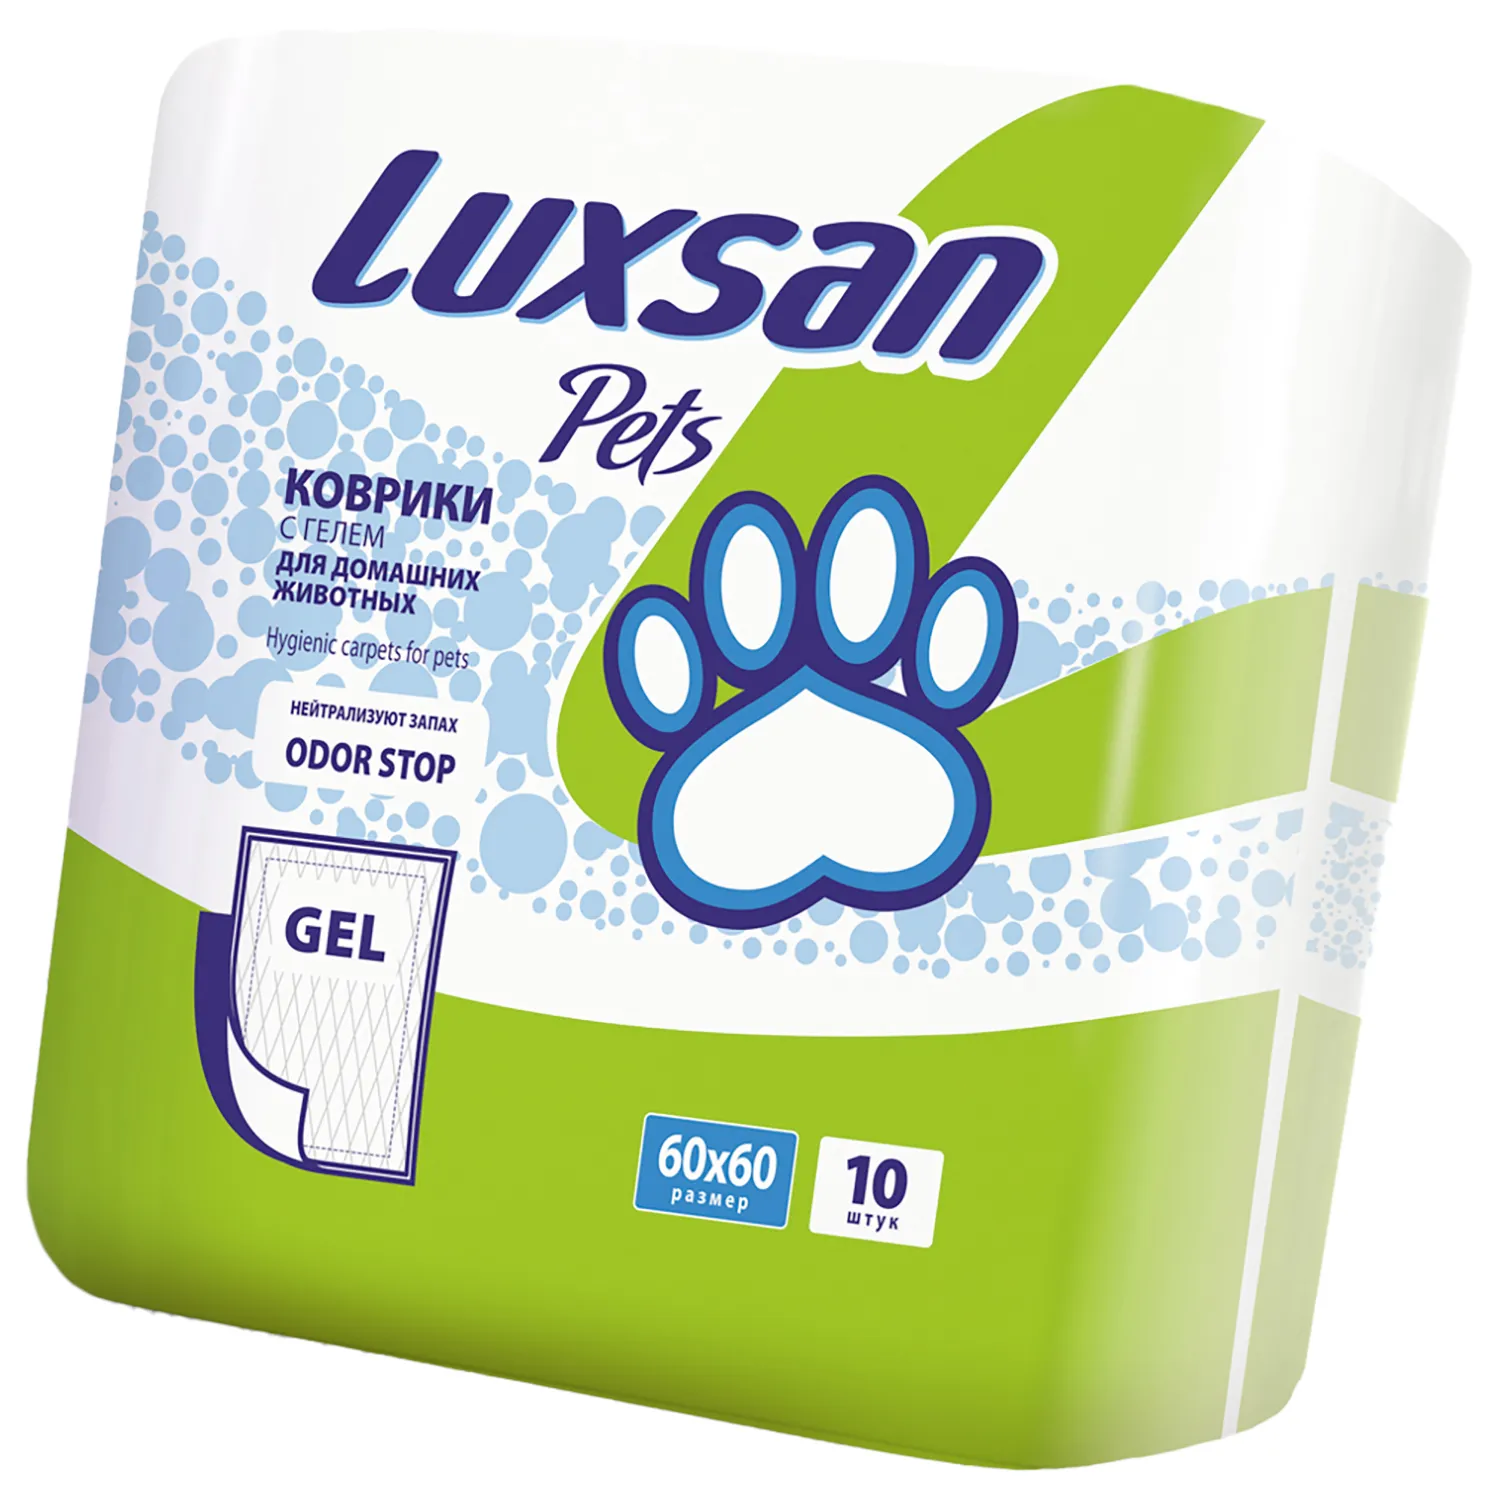 Коврики (пеленки) LUXSAN Premium GEL для животных 60х60, 10 шт